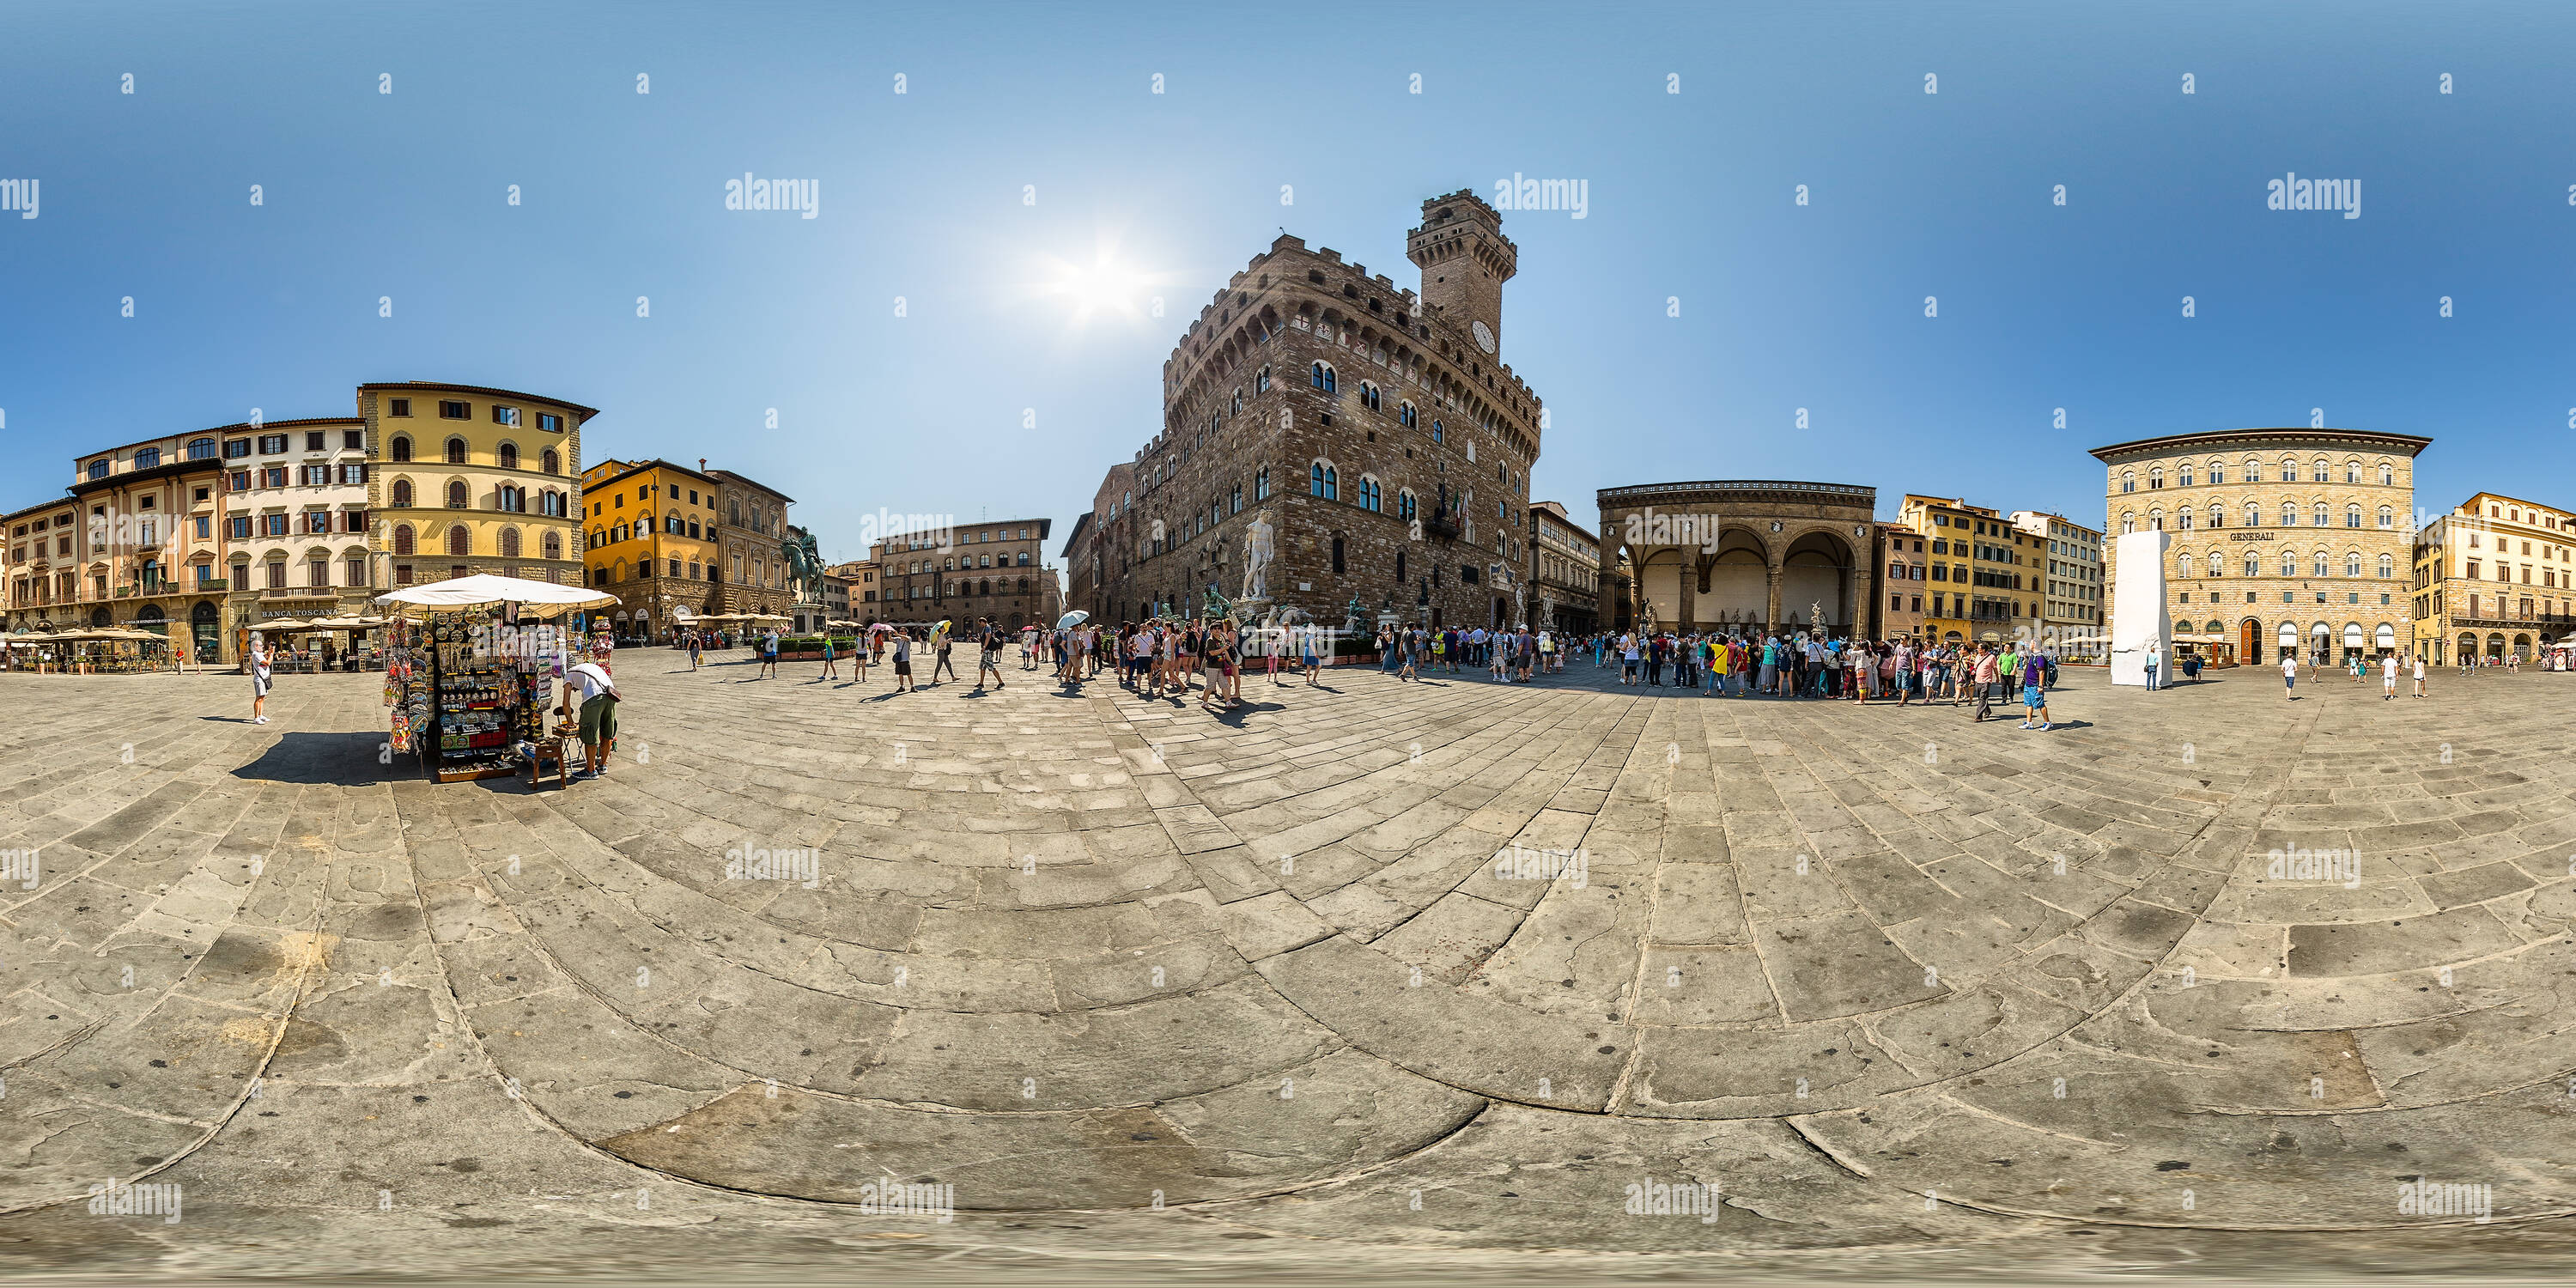 Vue panoramique à 360° de La Piazza della Signoria. Firenze.